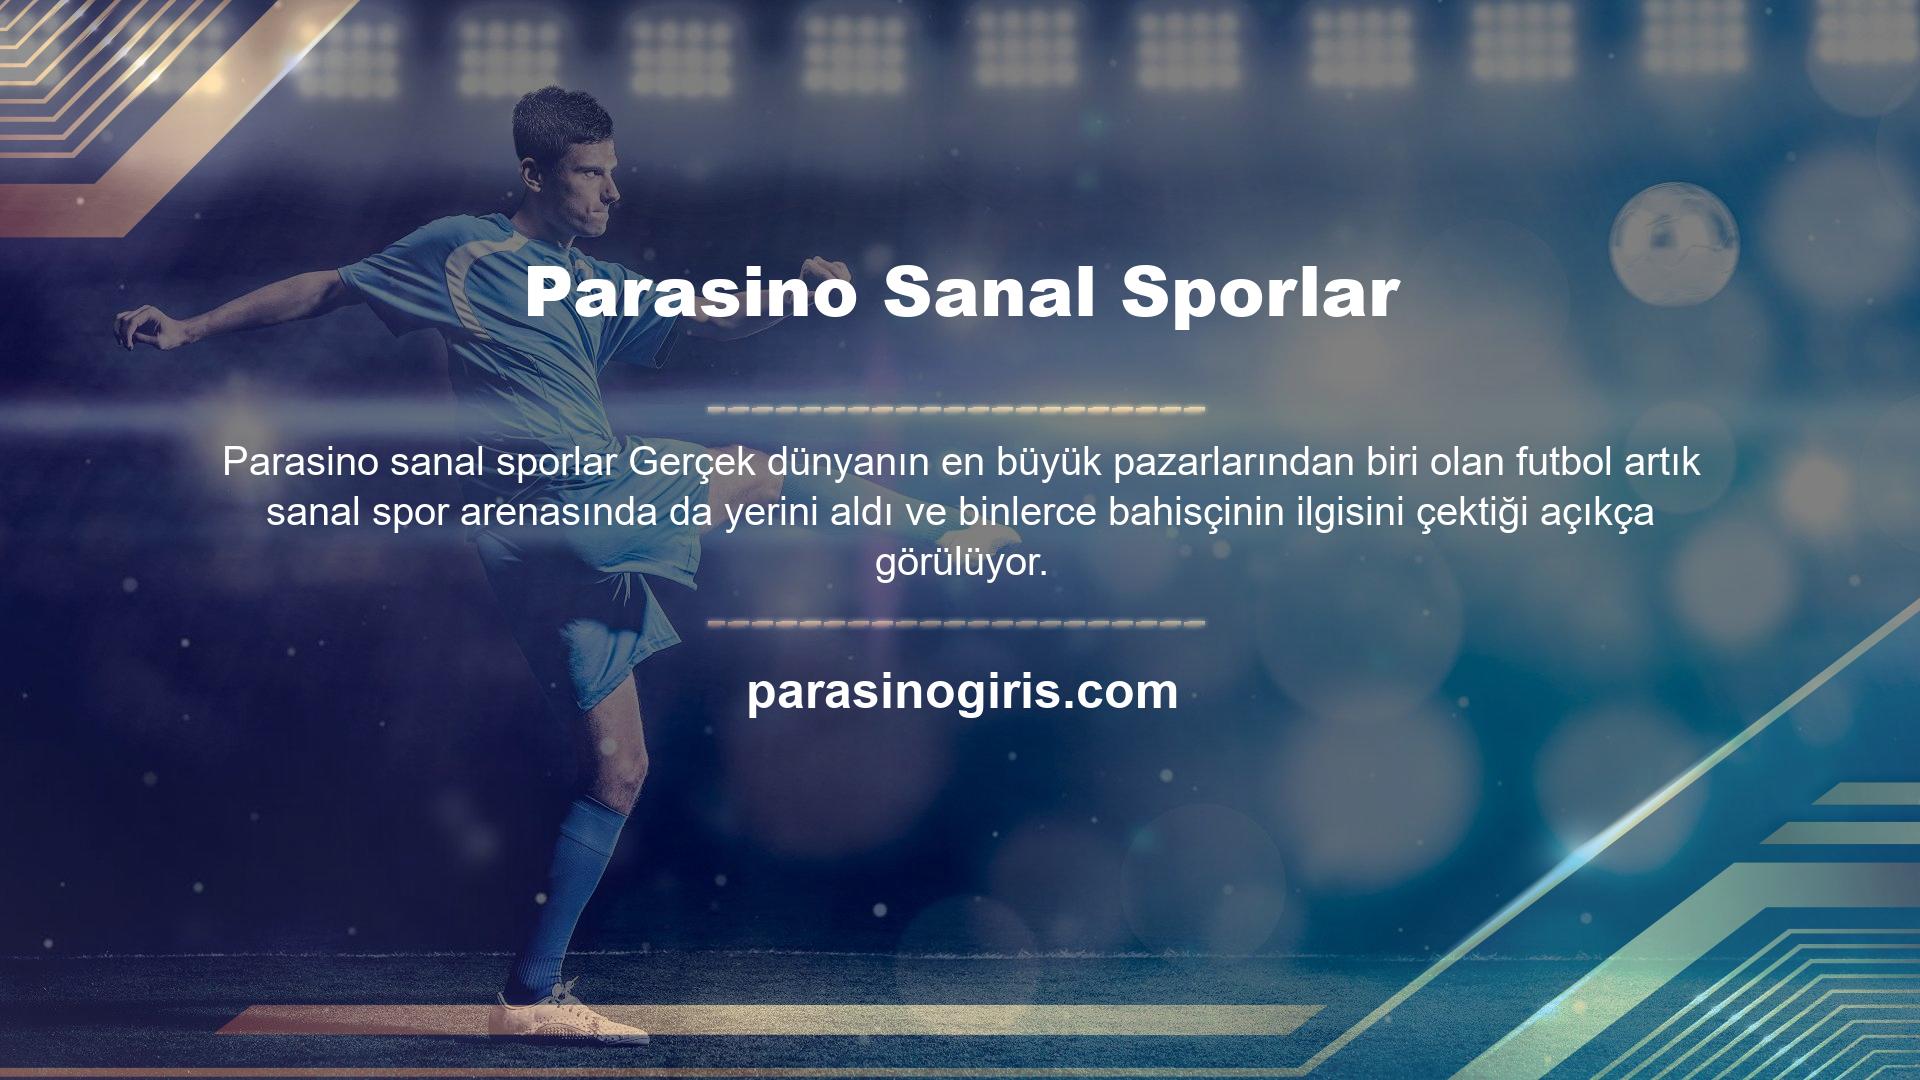 Parasino sanal sporlar ekranından sanal futbol liglerini ve maçlarını seçebilirsiniz